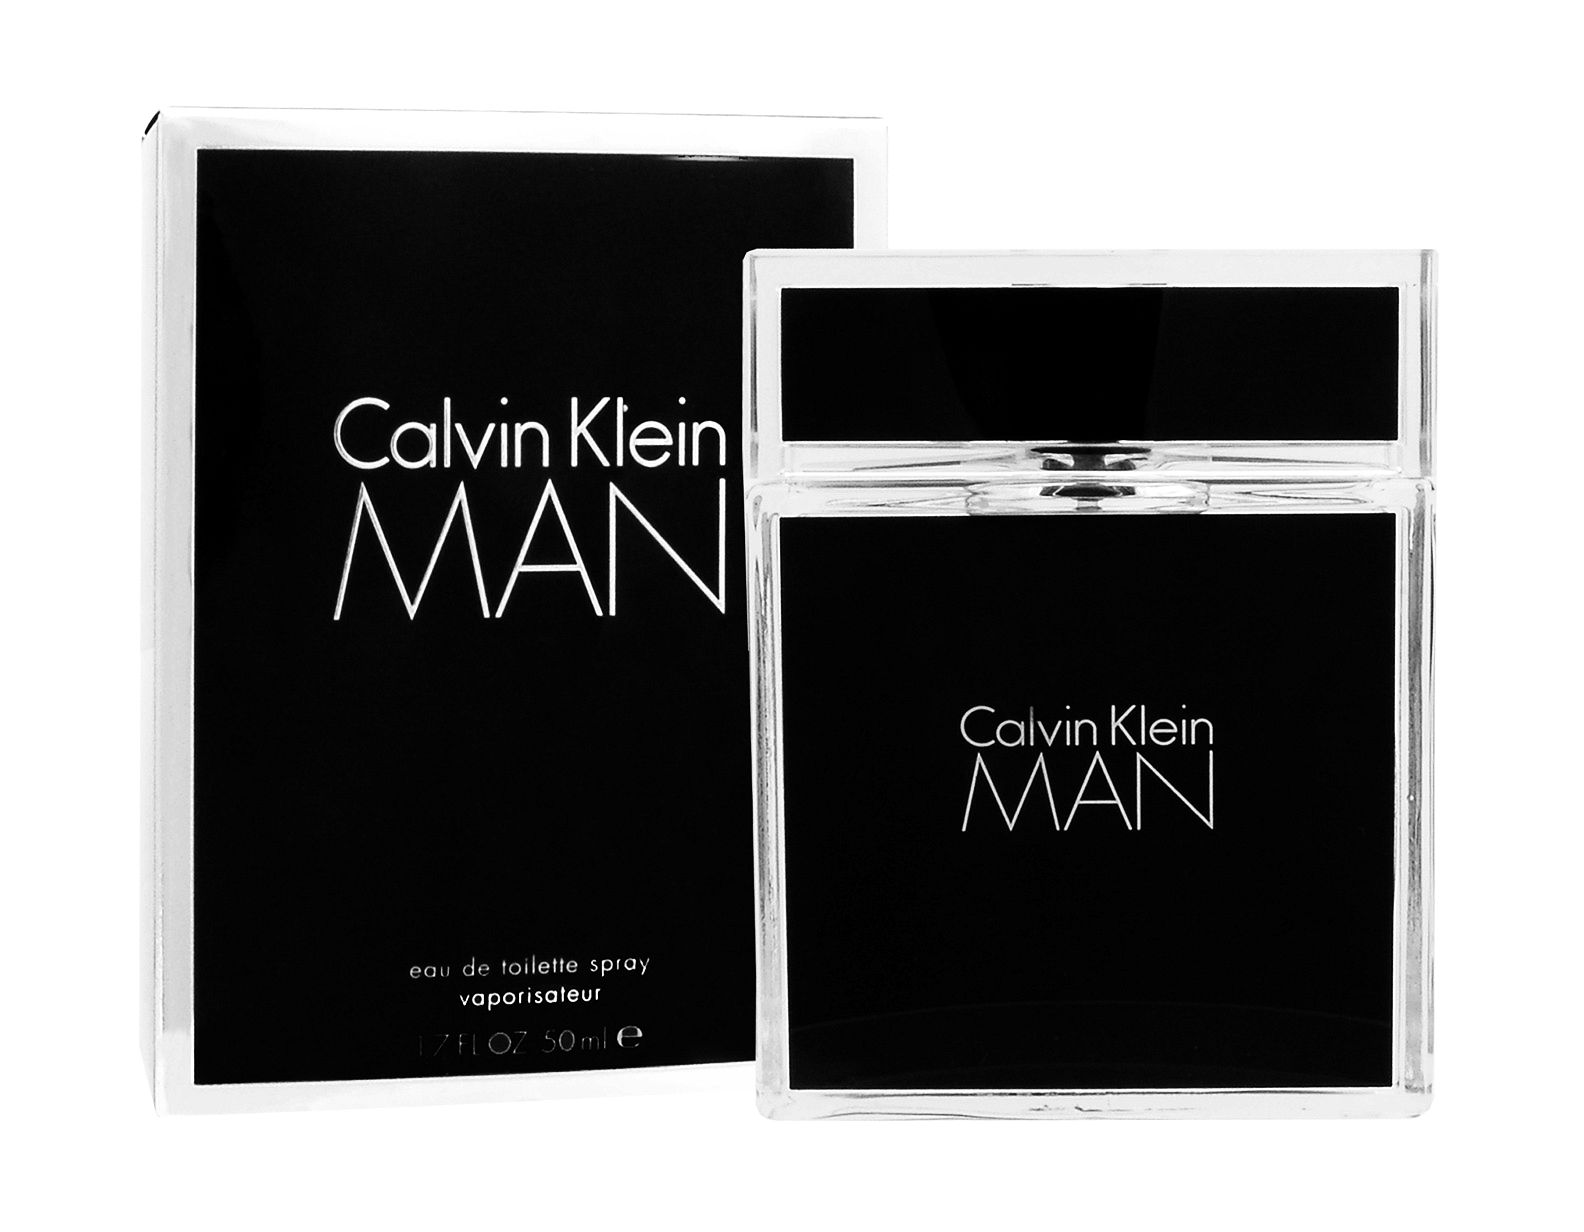 From Pyrgos: Calvin Klein Man (Calvin Klein)